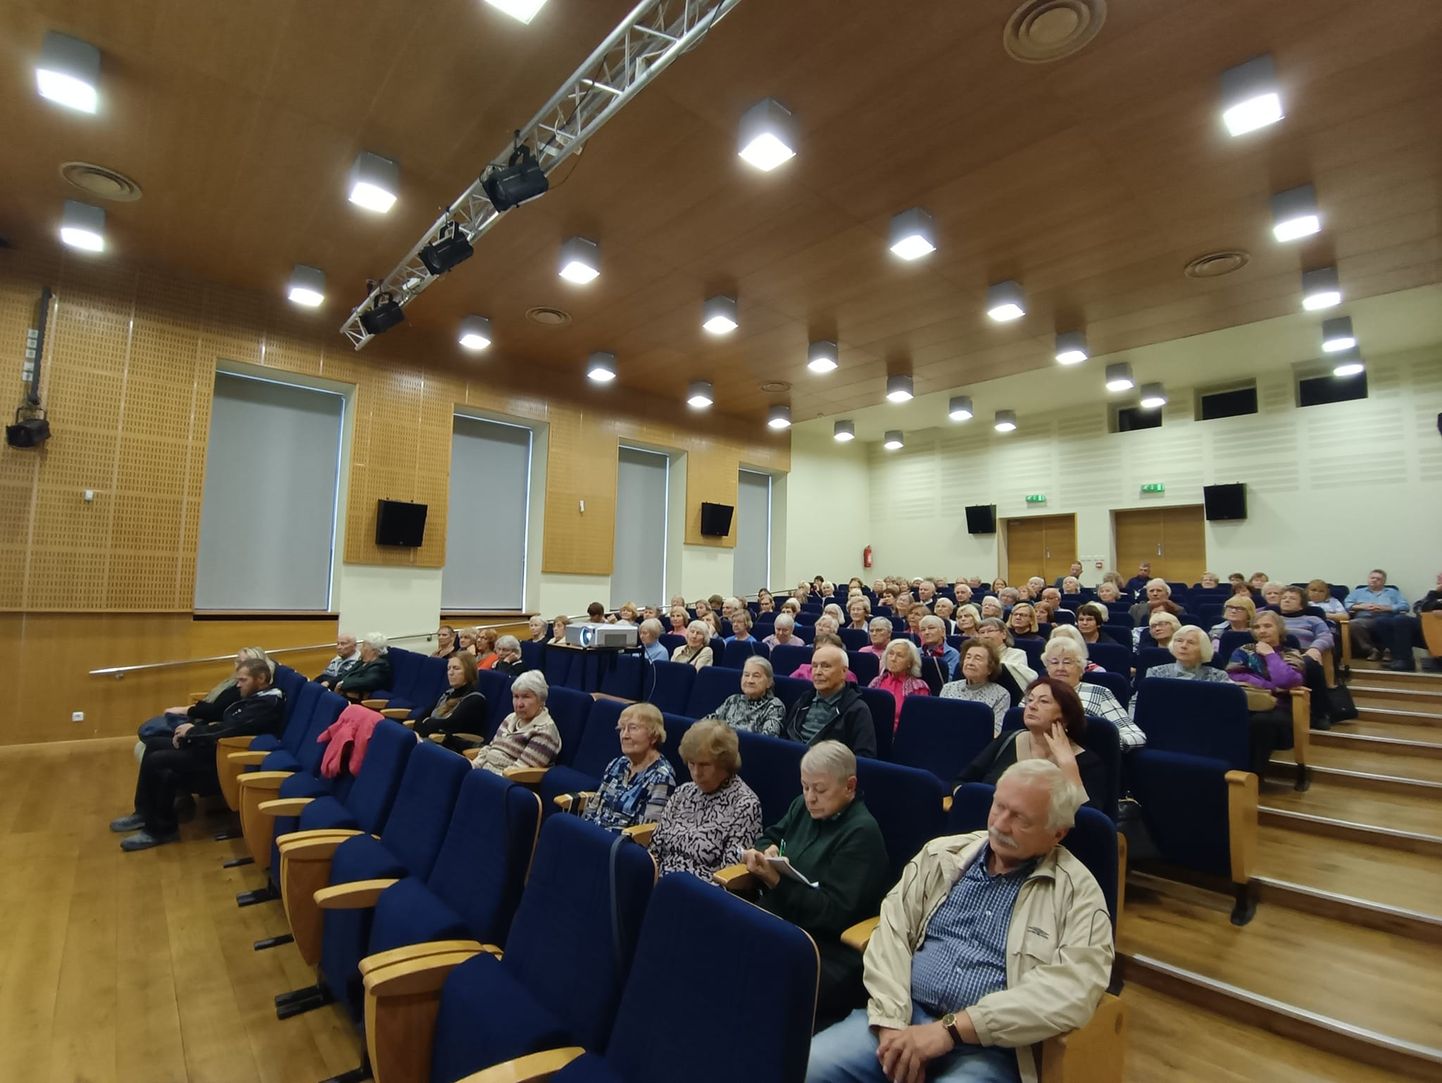 Türi kultuurikeskuse saali kogune loenguid kuulama väärikas eas auditoorium.